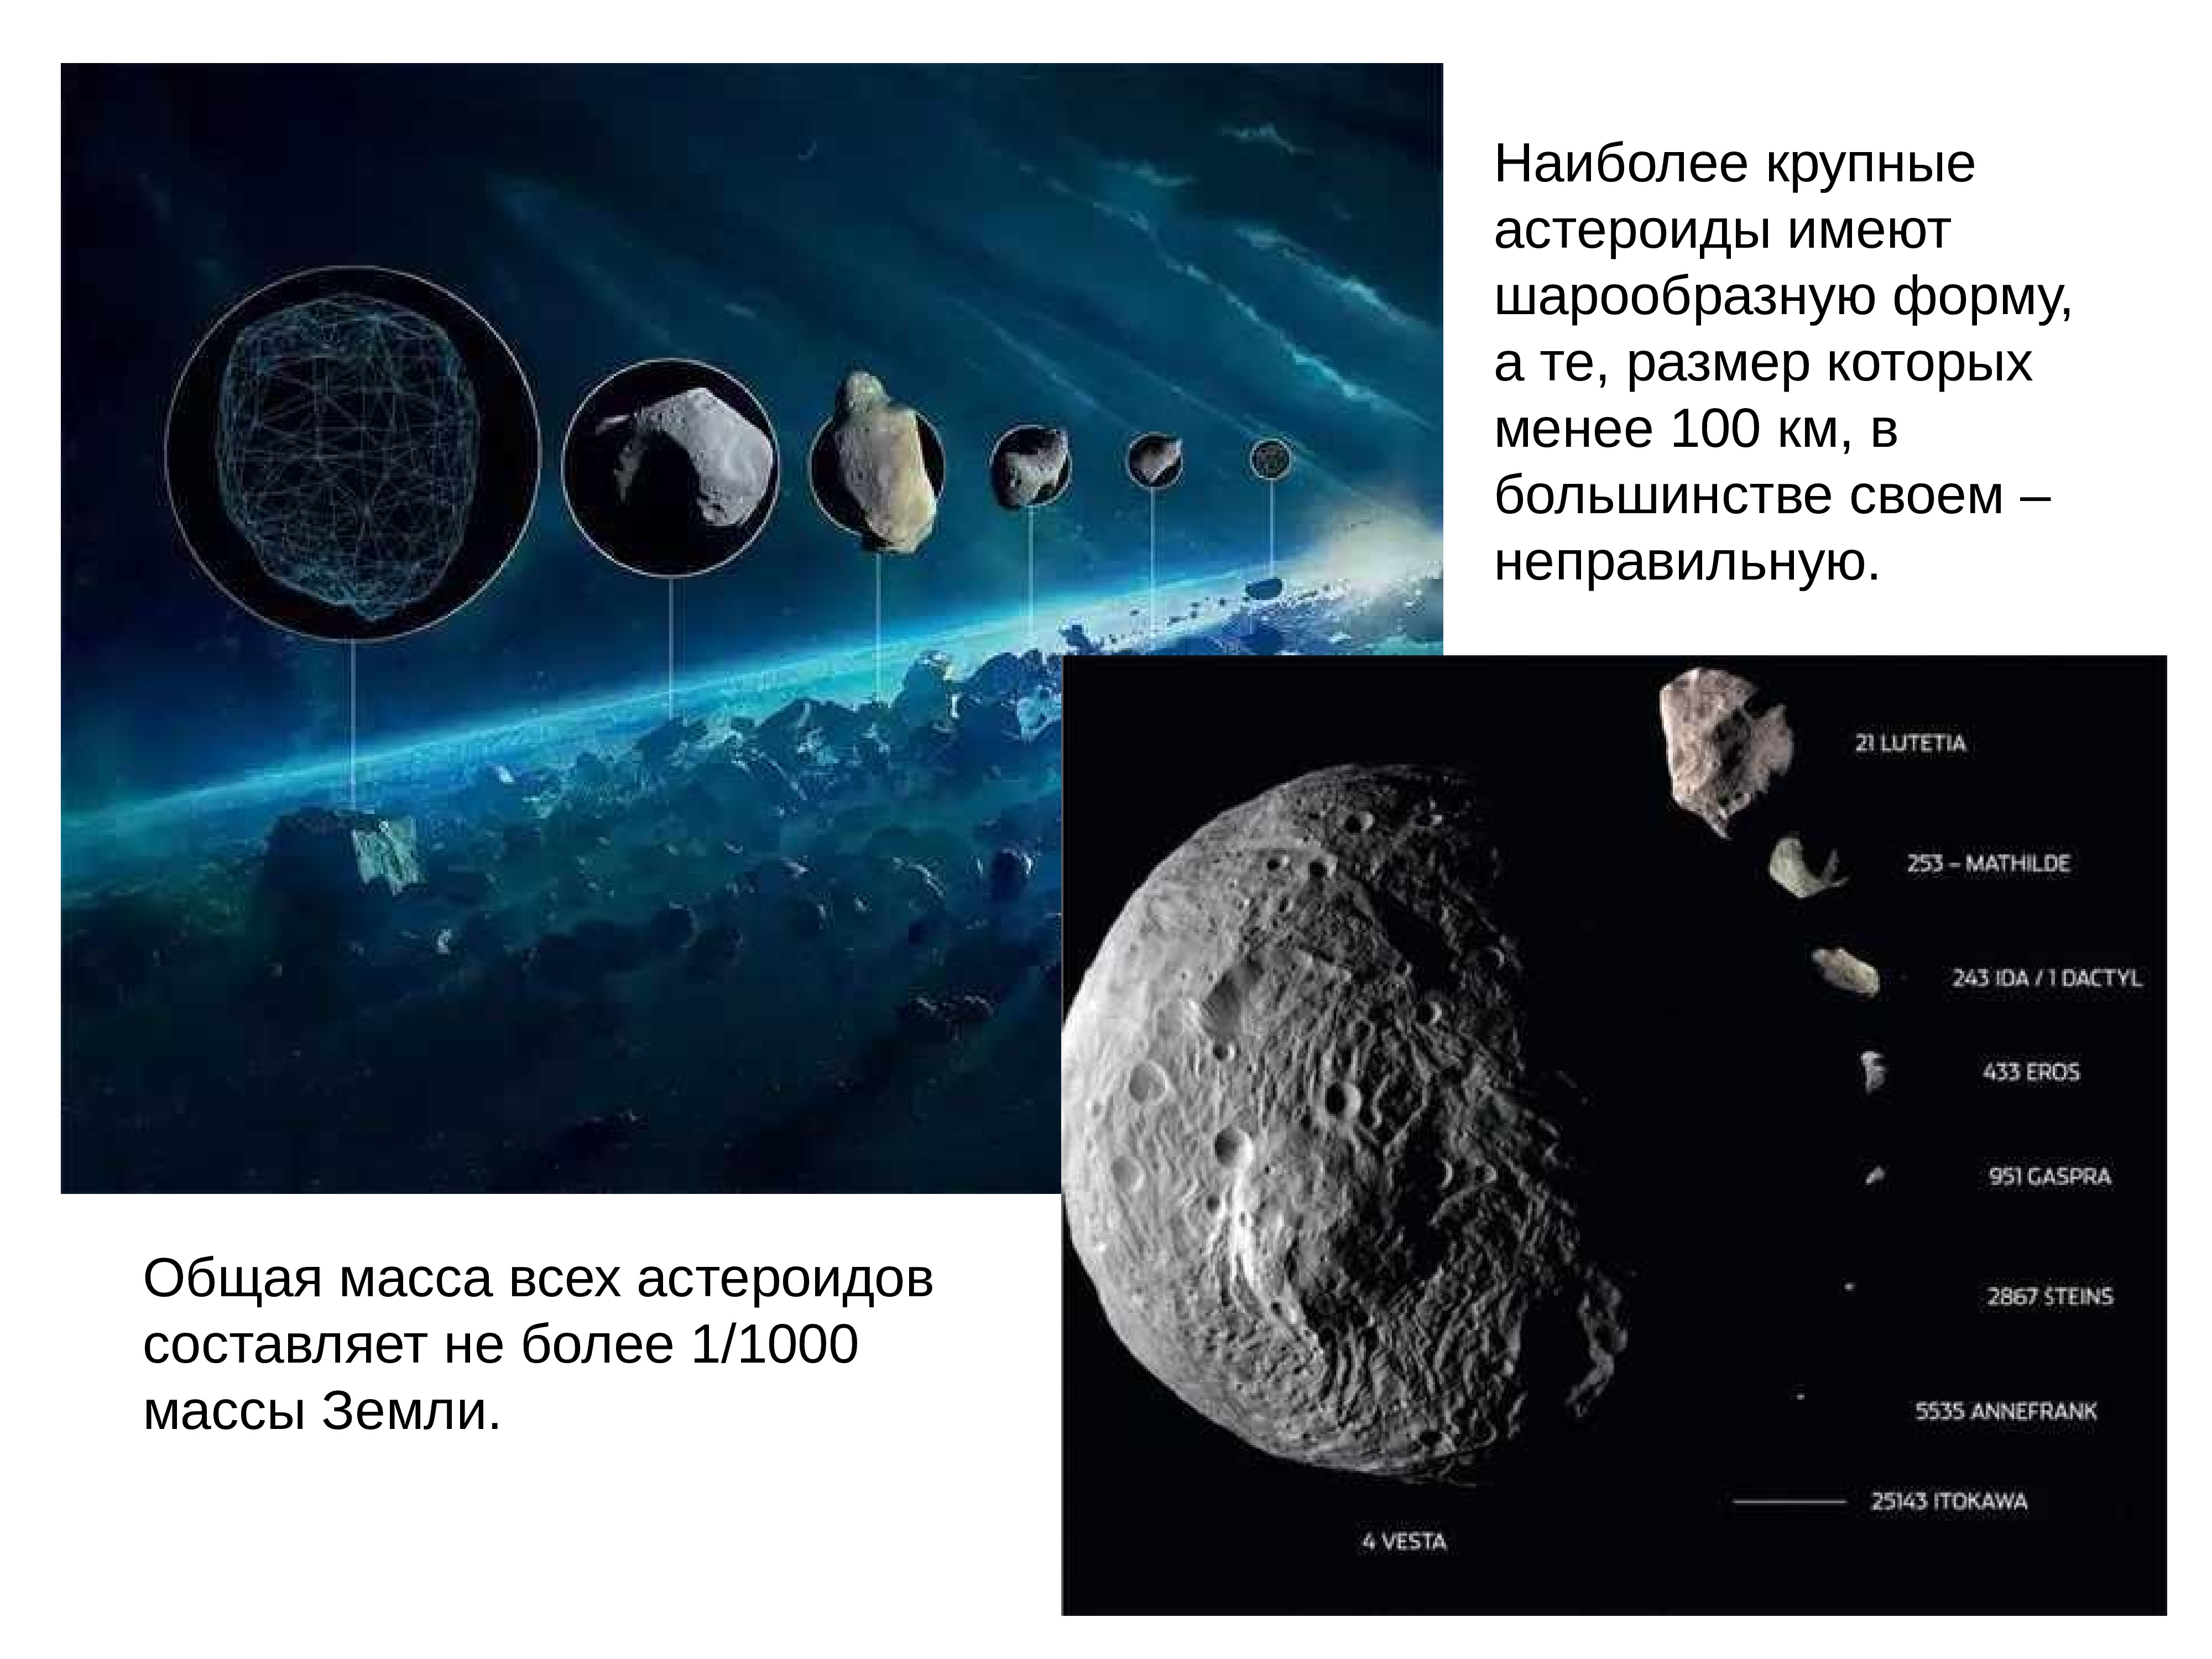 Название группы астероидов. Малые тела солнечной системы Карликовые планеты астероиды. Астероиды Карликовые планеты кометы. Спутники планет малые тела солнечной системы кратко. Камета Карлликовые планеты, астероид.